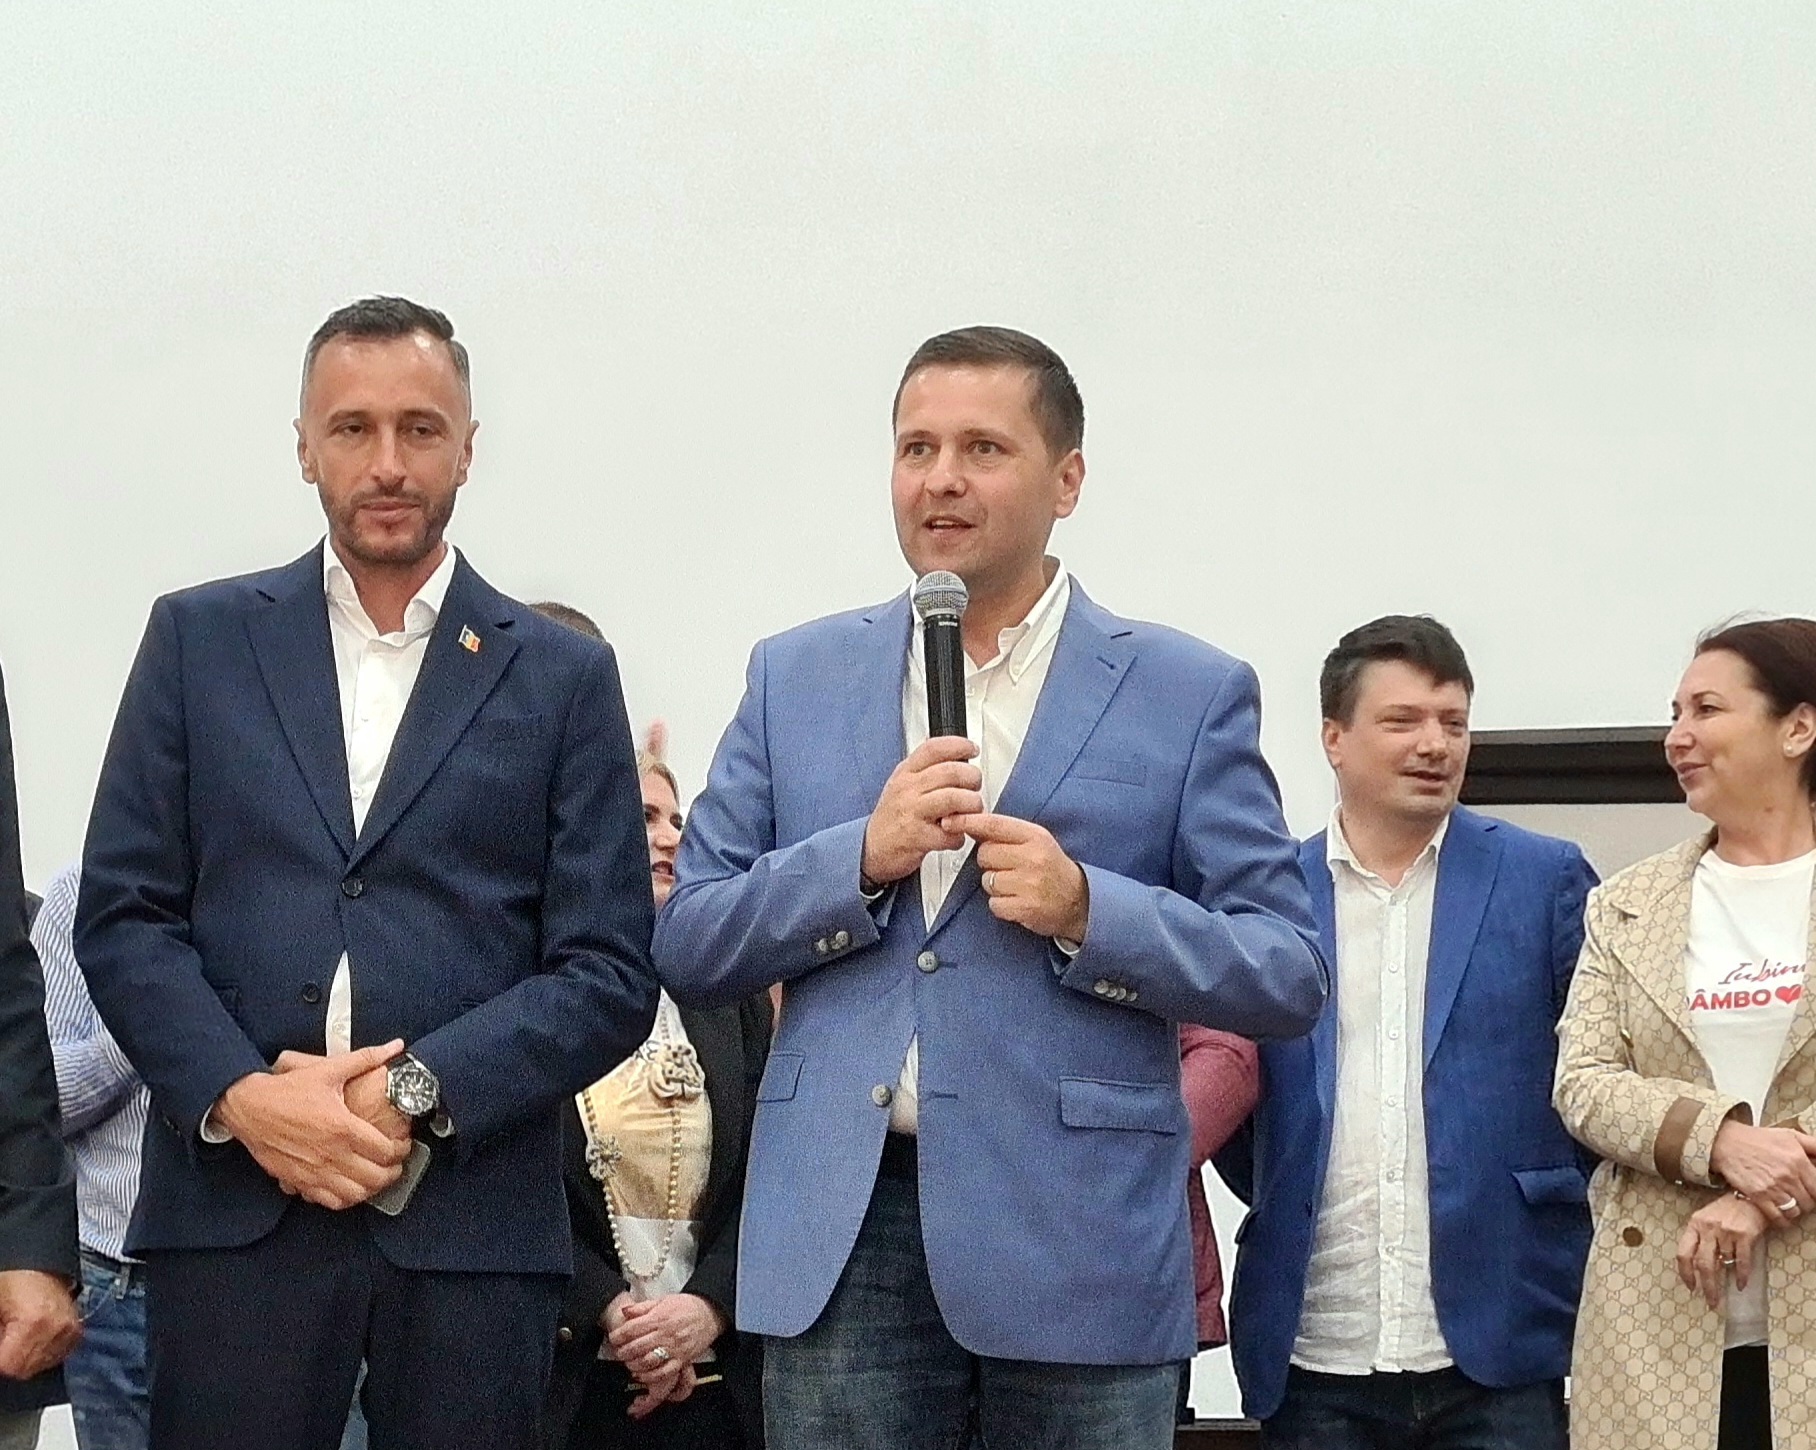 Alexandru Iorga va fi candidatul PSD la Primăria Găești. Decizia a fost luată cu unanimitate de voturi în ședința Biroului Permanent Județean al PSD Dâmbovița.